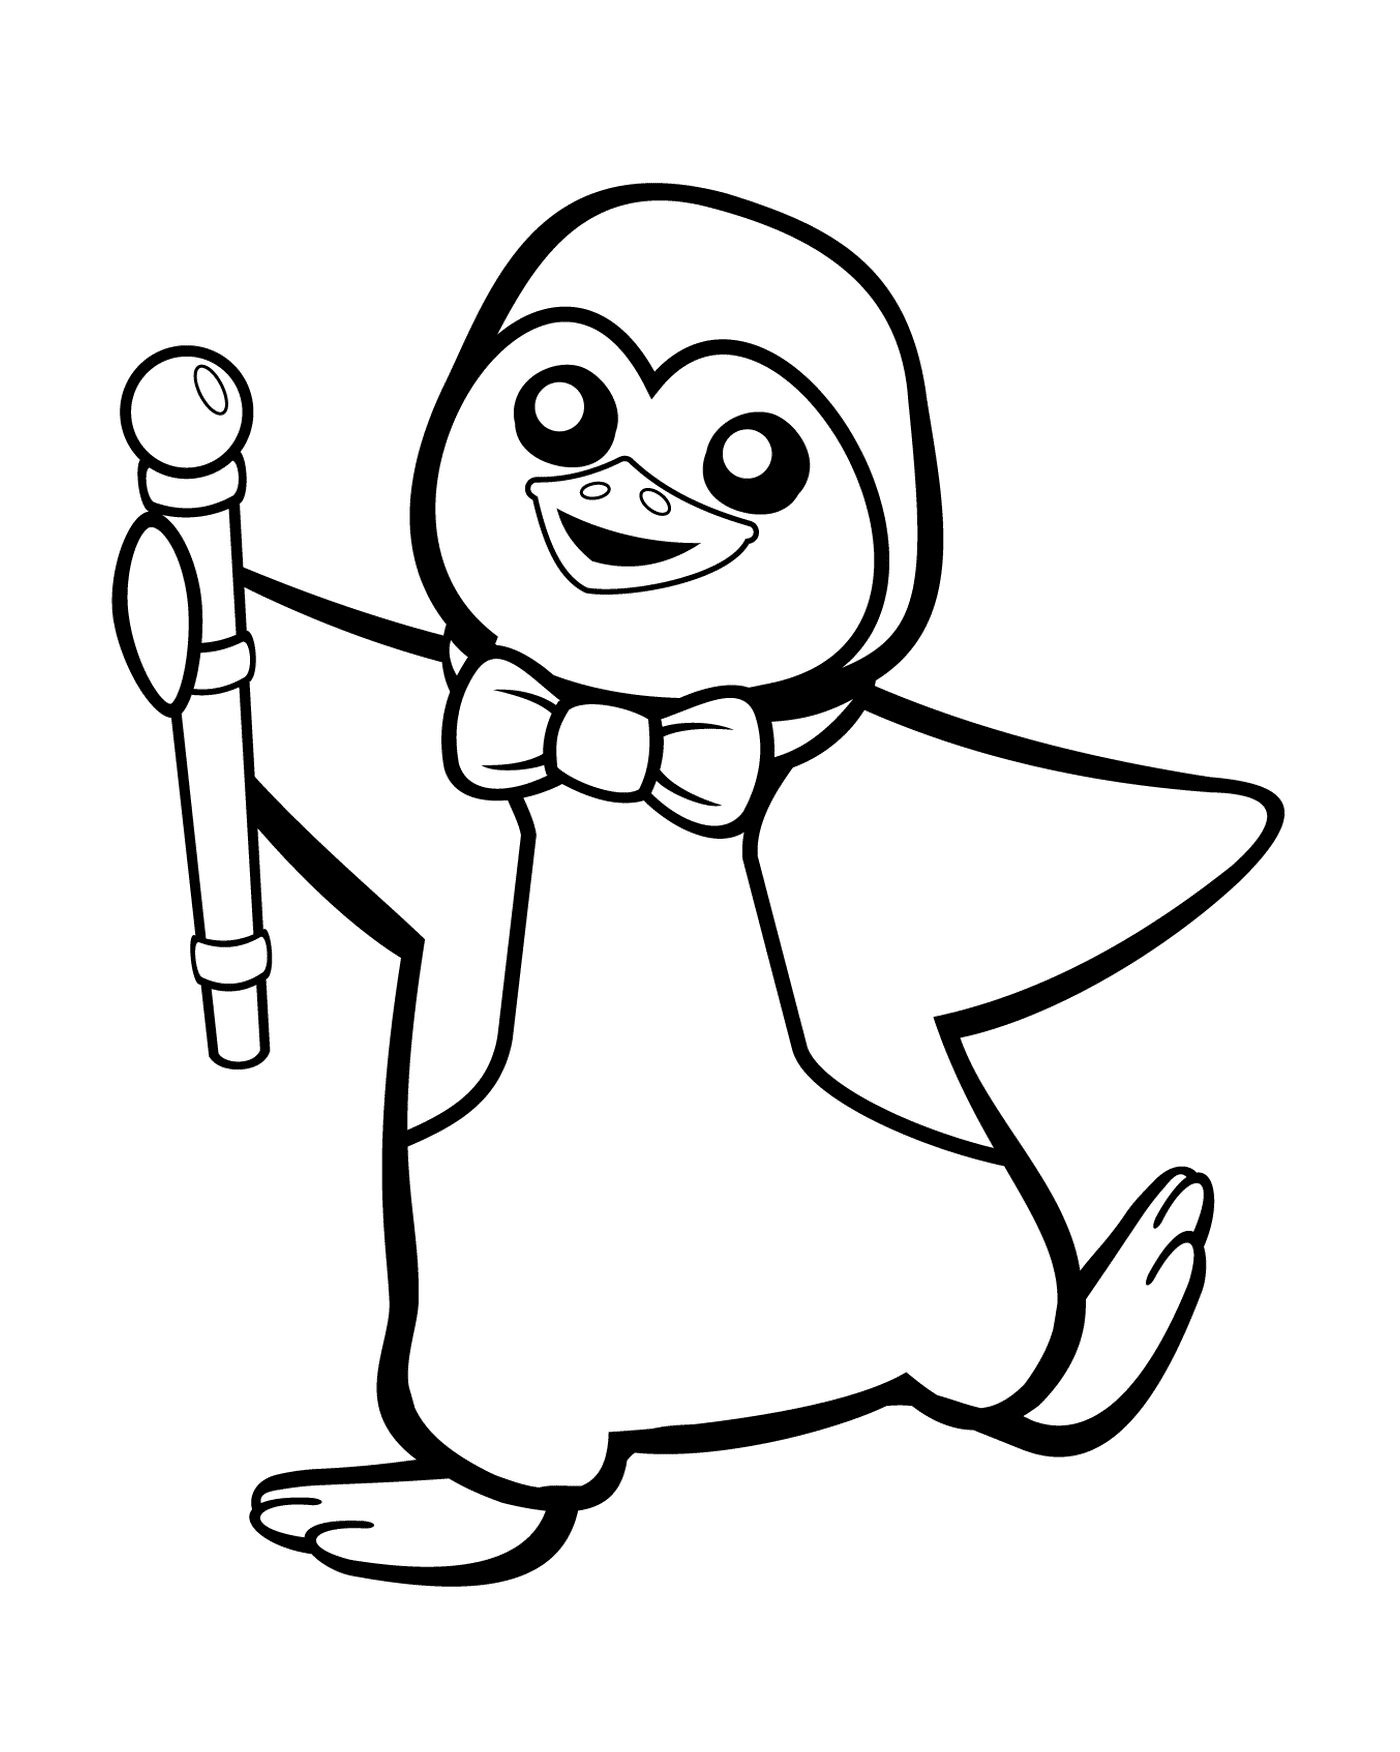   Un pingouin tenant une canne 